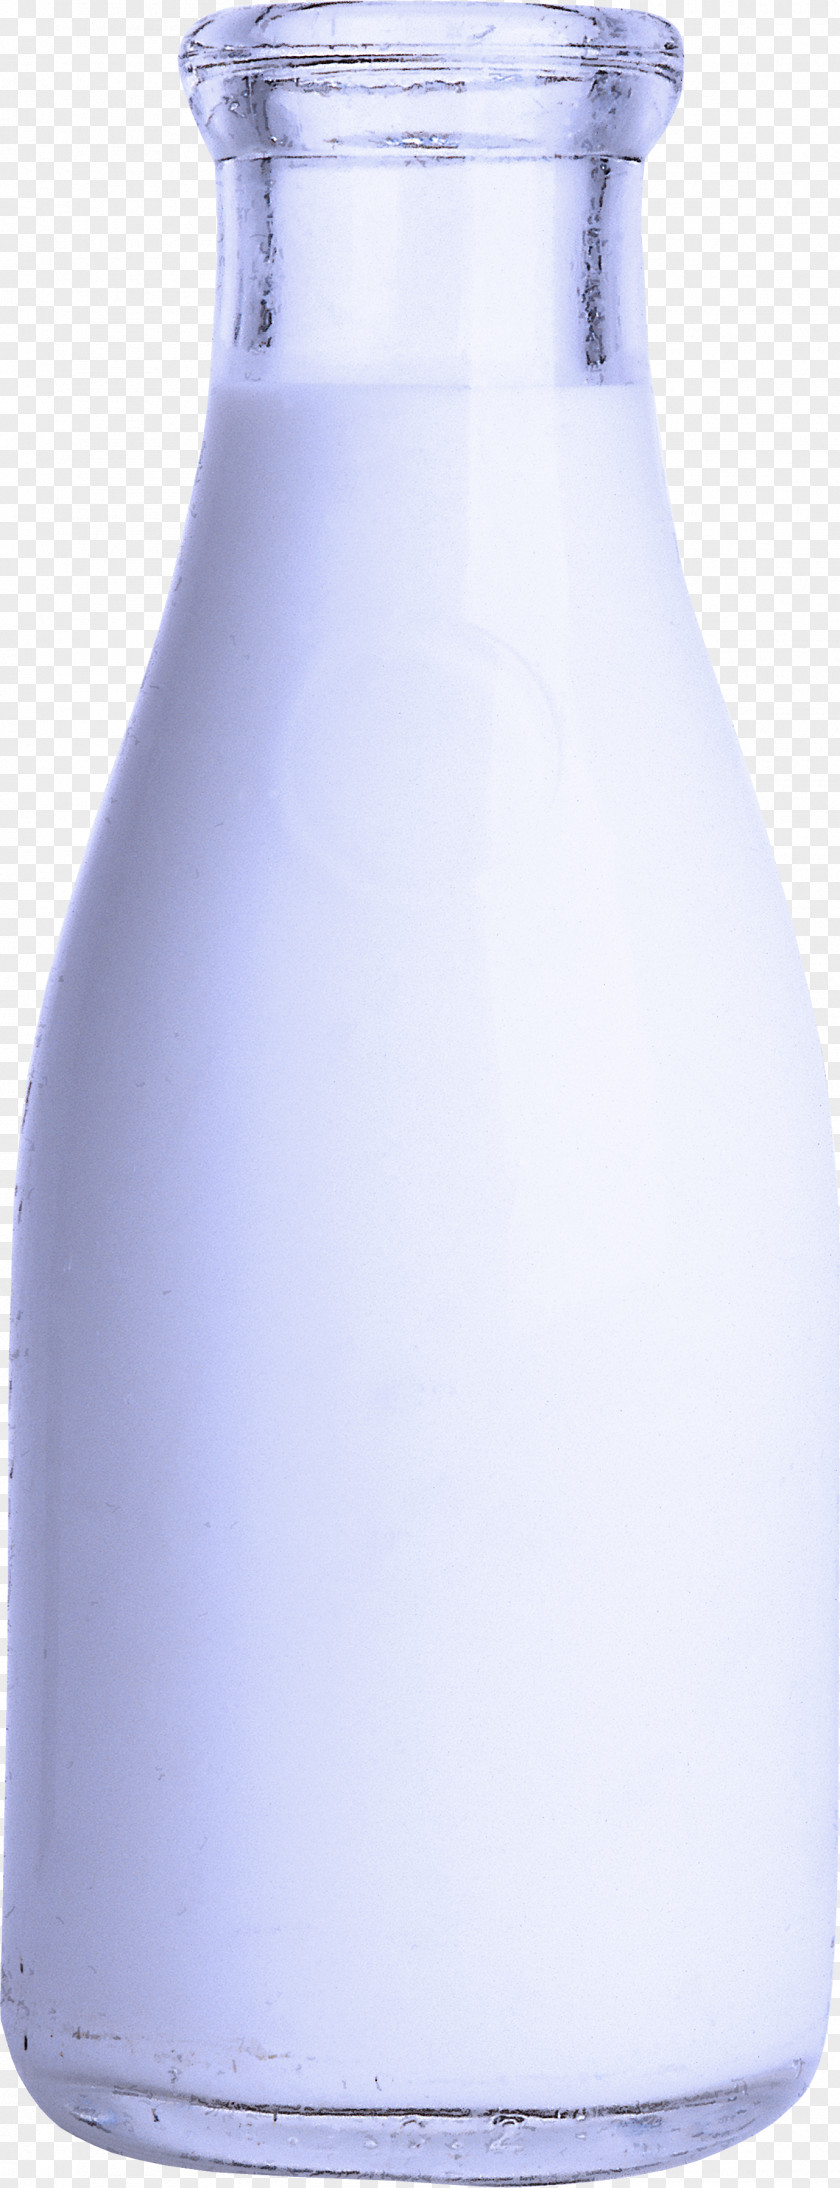 Plastic Bottle Vase PNG